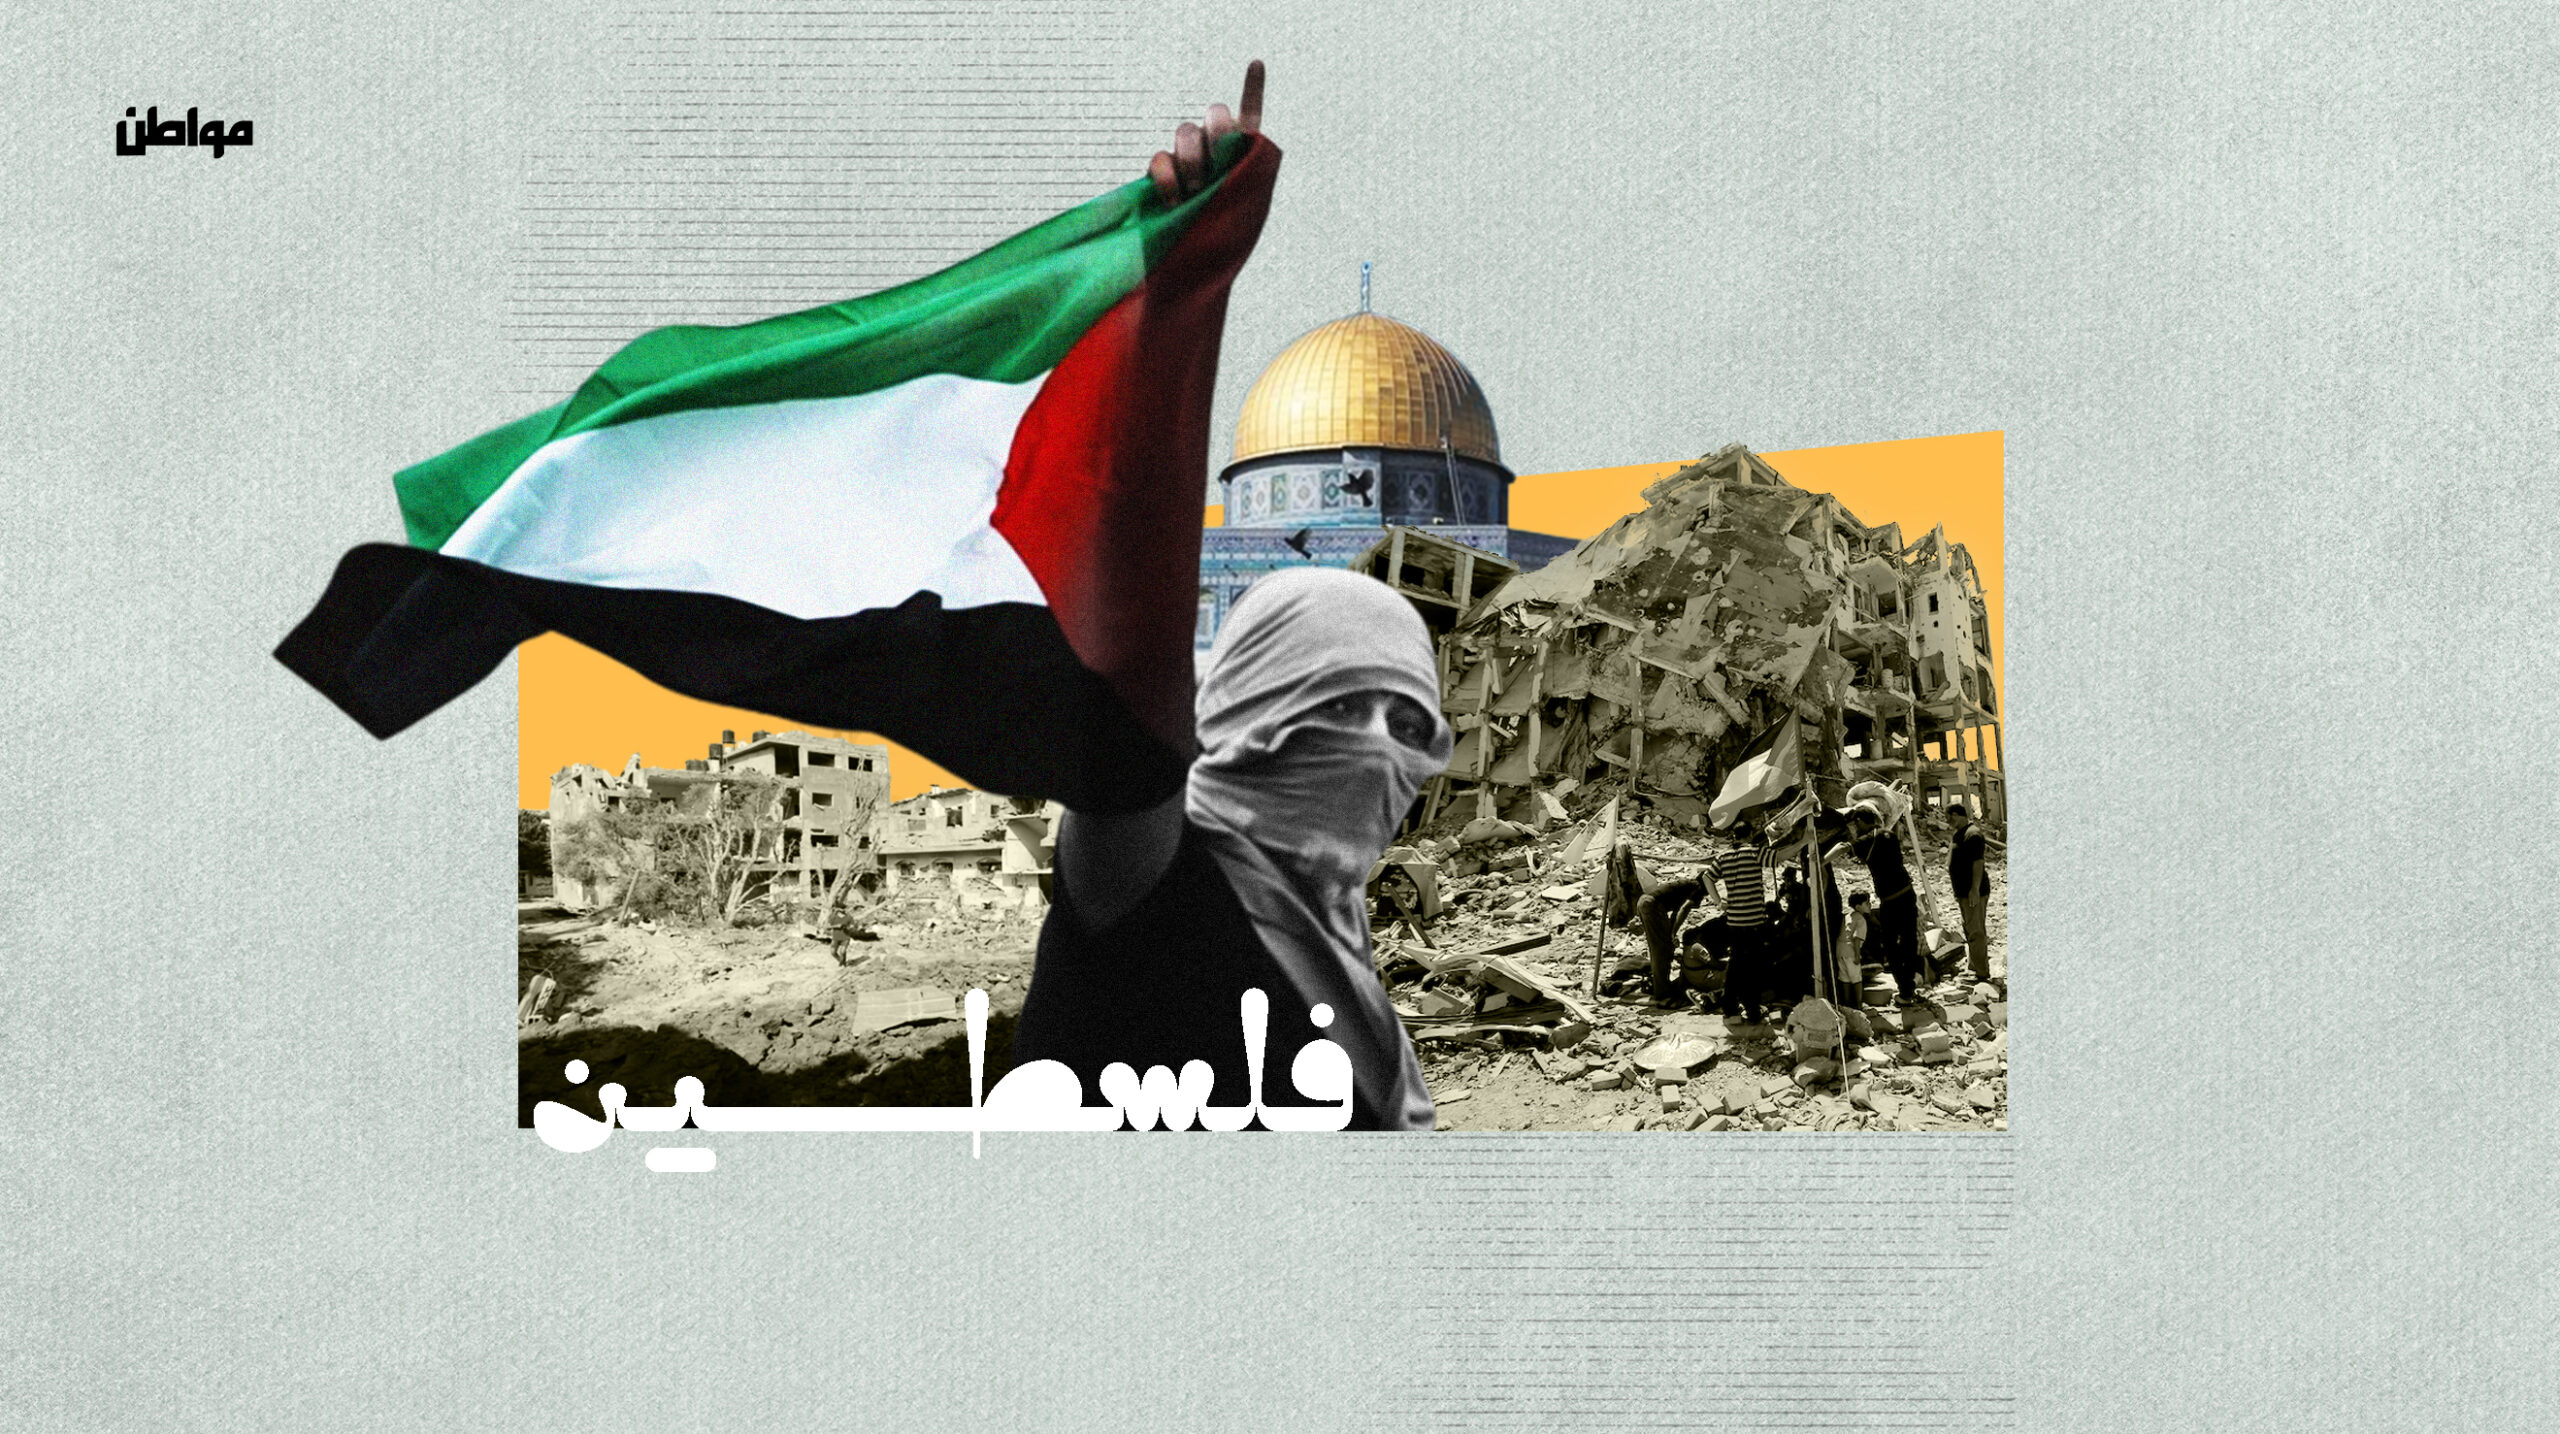 ما يجري في غزة اليوم يمثل التحدي الأكبر للنظام تحت مظلة الأمم المتحدة، على أساس يلتزم بسيادة الدول، وحتى تقرير المصير، واحترام حقوق الإنسان. 